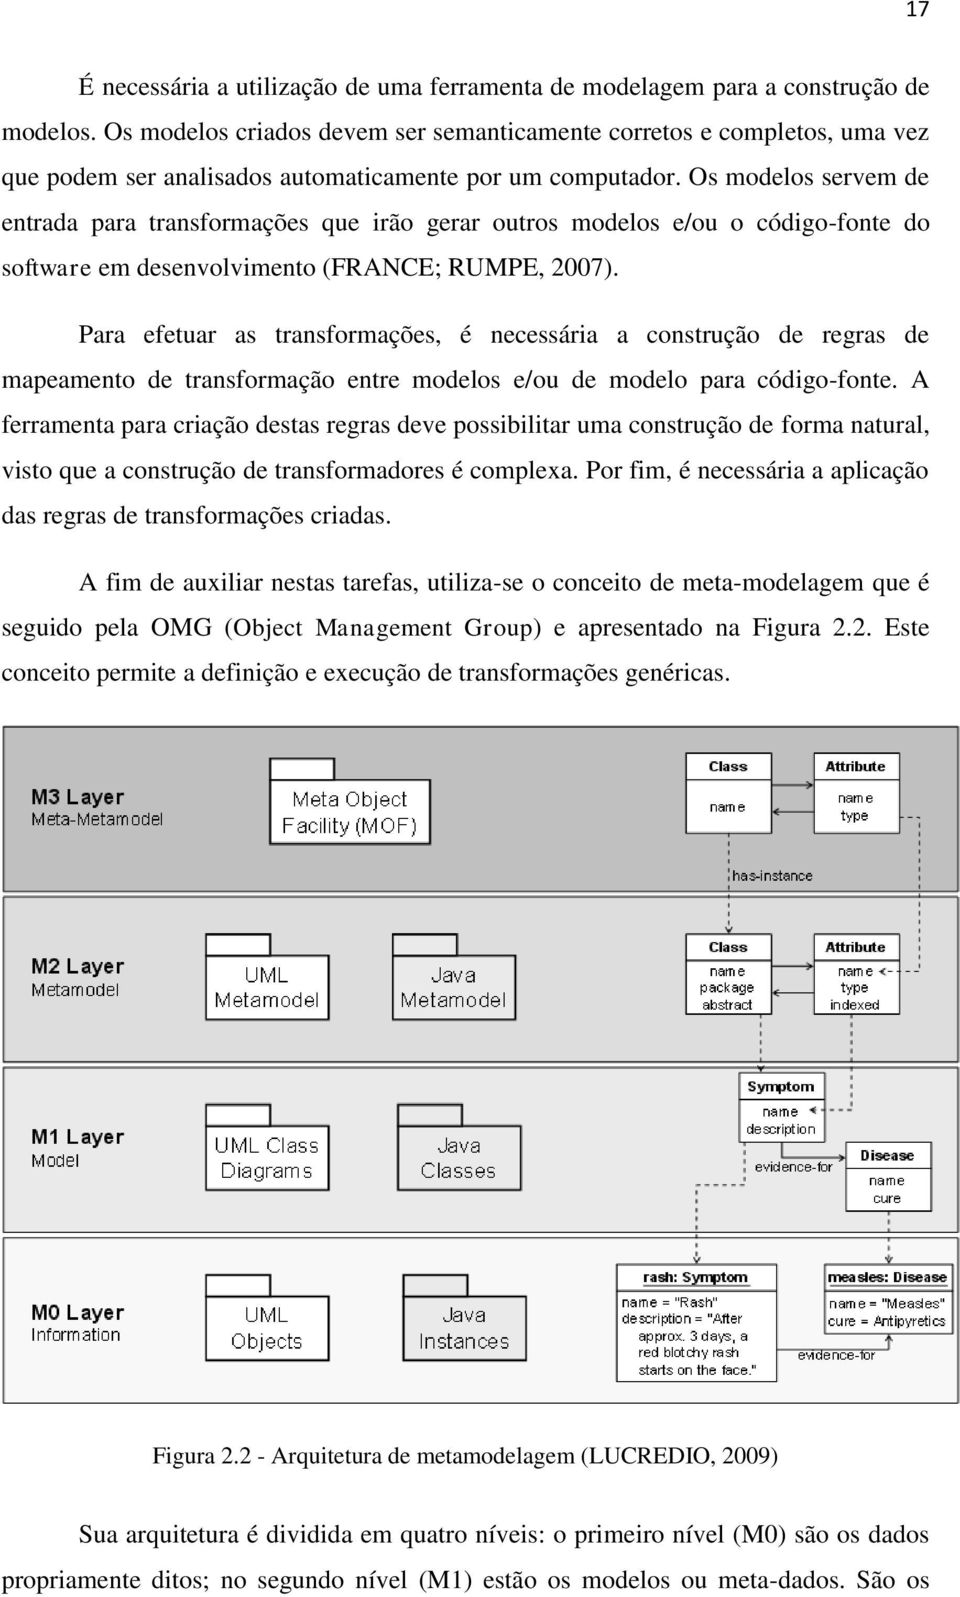 Os modelos servem de entrada para transformações que irão gerar outros modelos e/ou o código-fonte do software em desenvolvimento (FRANCE; RUMPE, 2007).